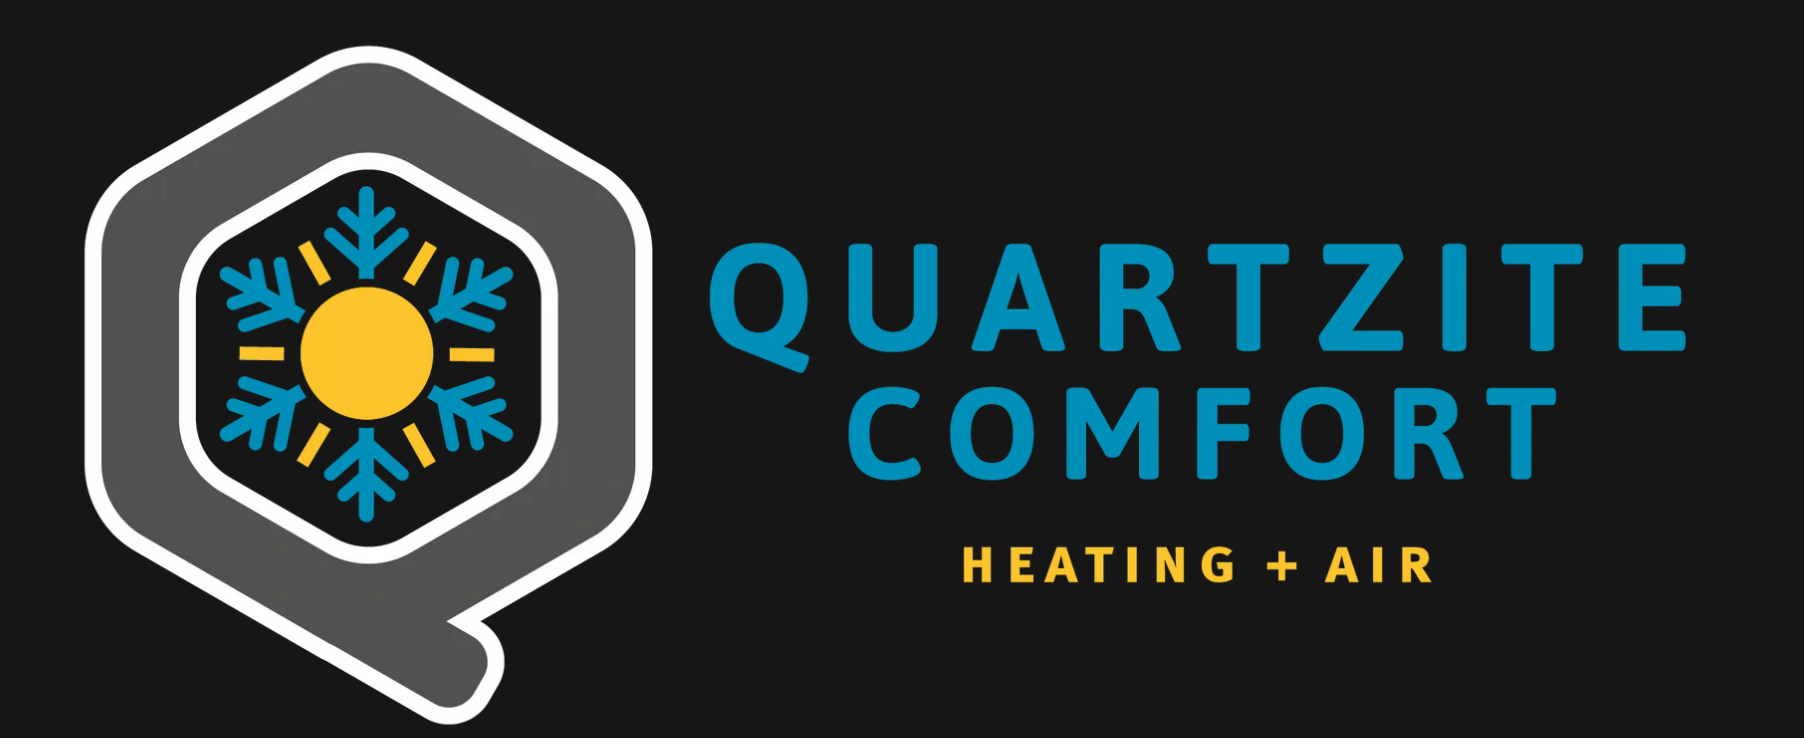 Quartzite Comfort HVAC